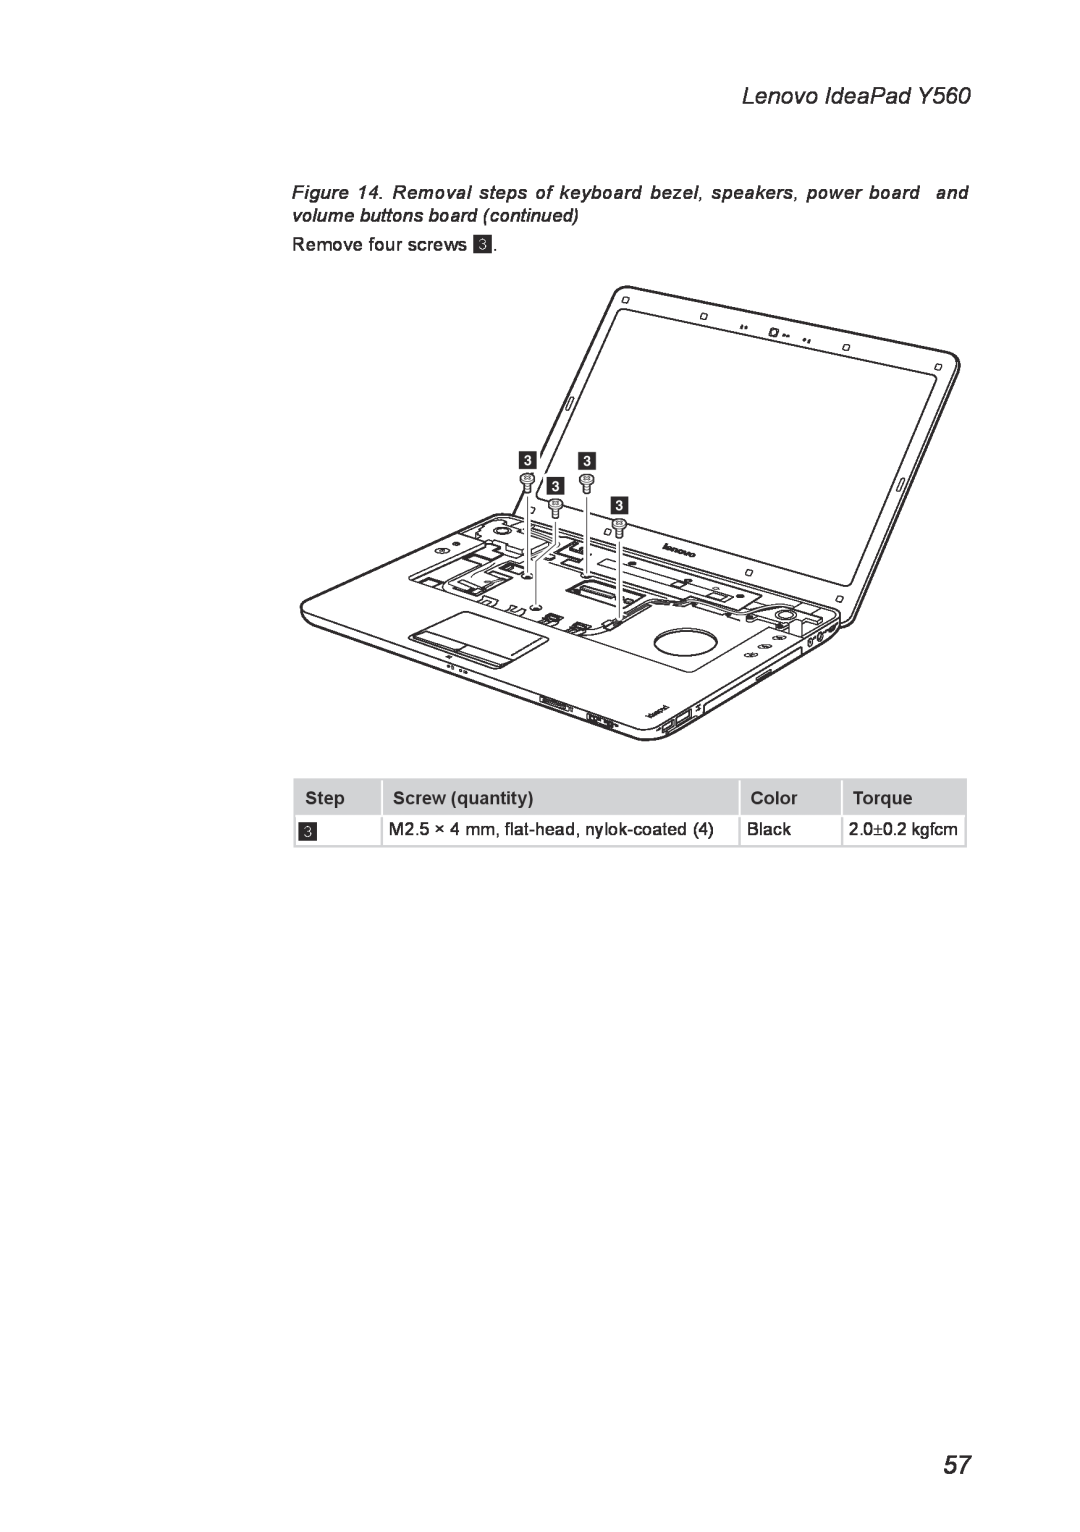 Lenovo manual Lenovo IdeaPad Y560, Step, Screw quantity, Color, Torque, 2.0±0.2 kgfcm 